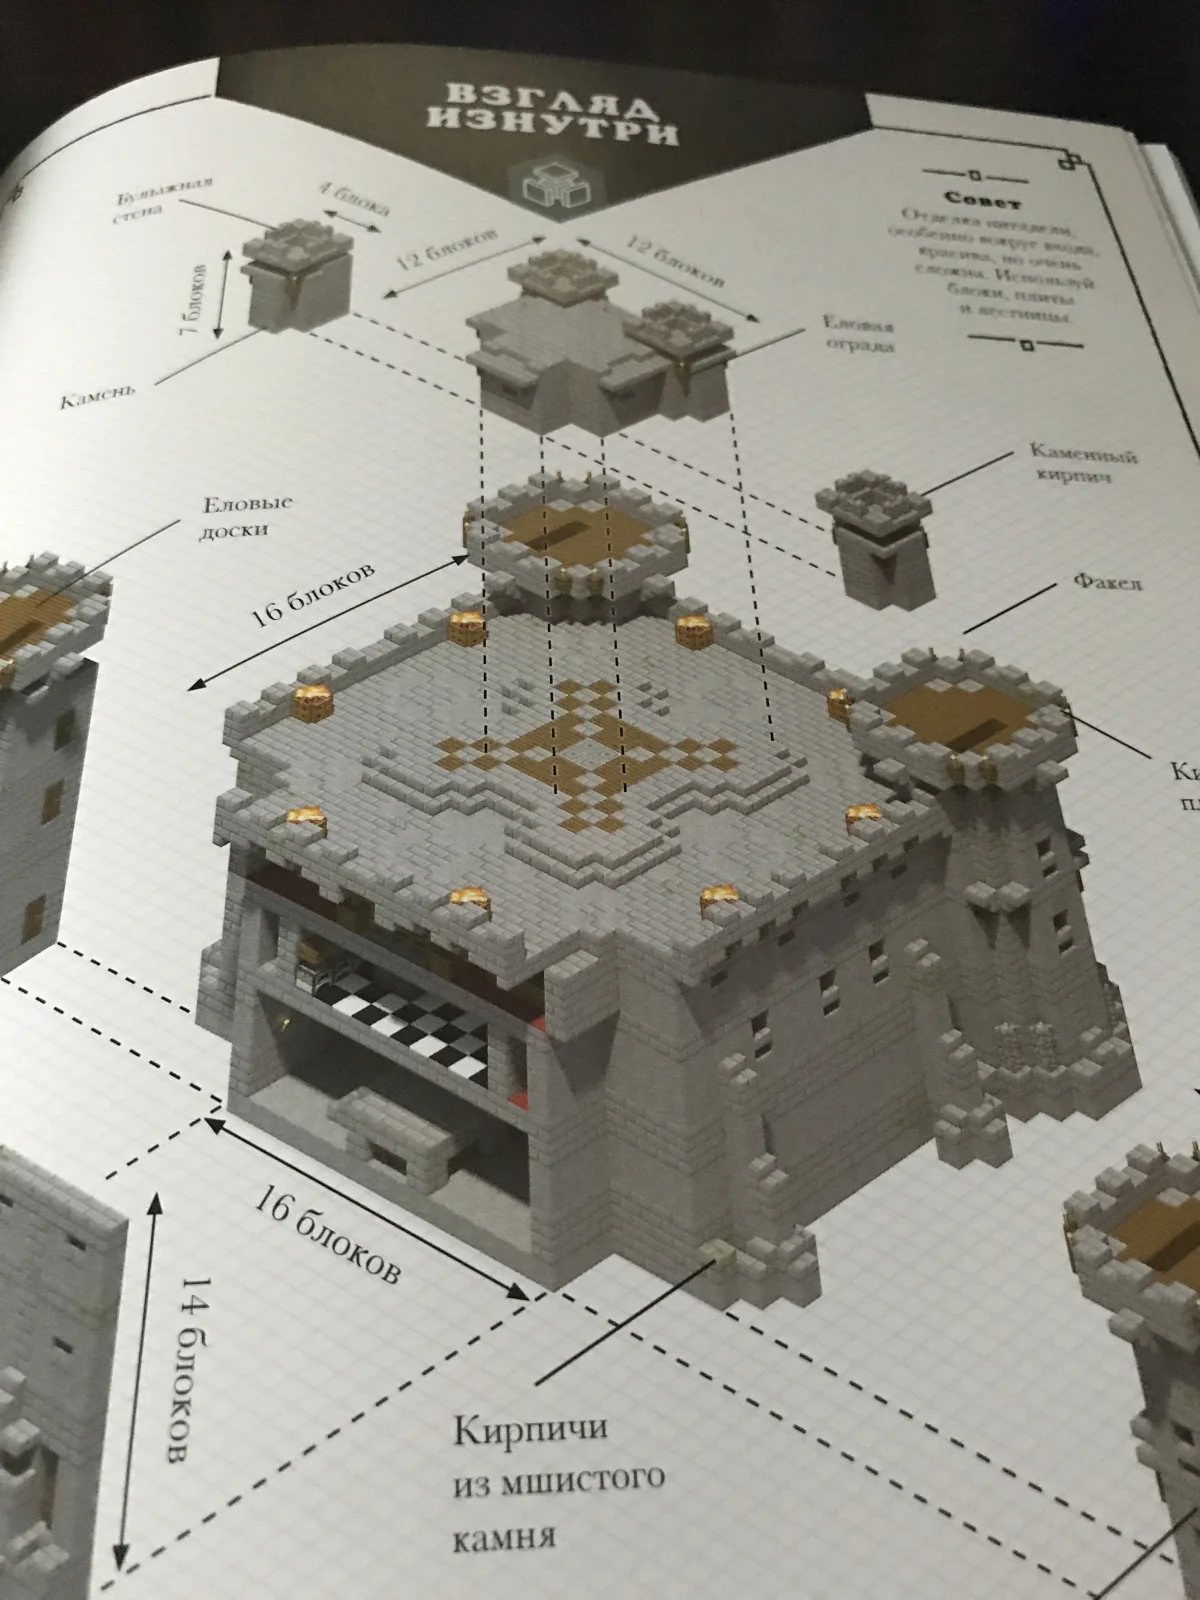 Обзор двух книг по Minecraft — «Minecraft: Только факты» и «Minecraft: Средневековая крепость» - фото 7